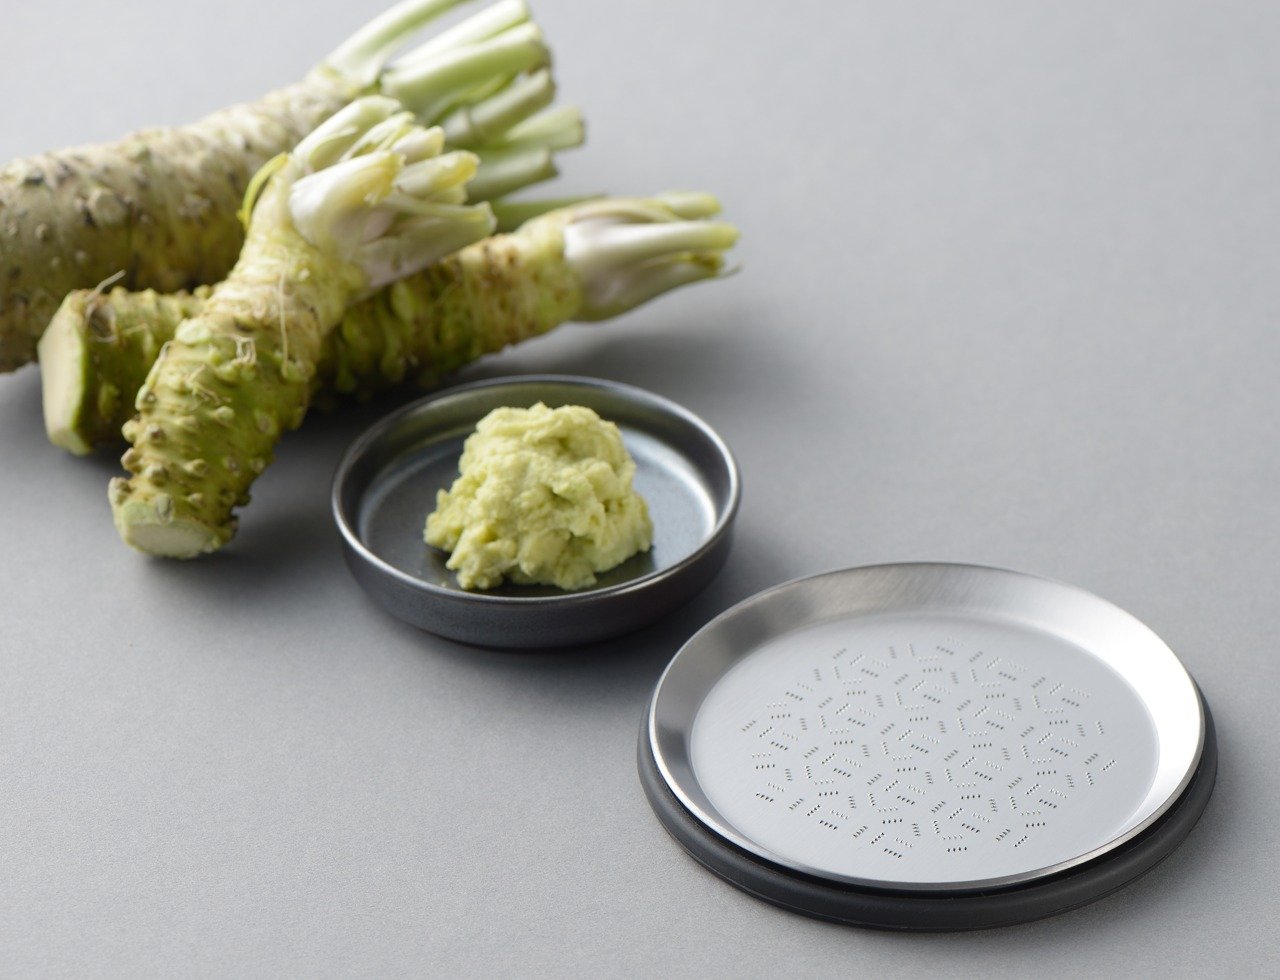 This tiny circular grater turns cooking into a meditative and joyful activity